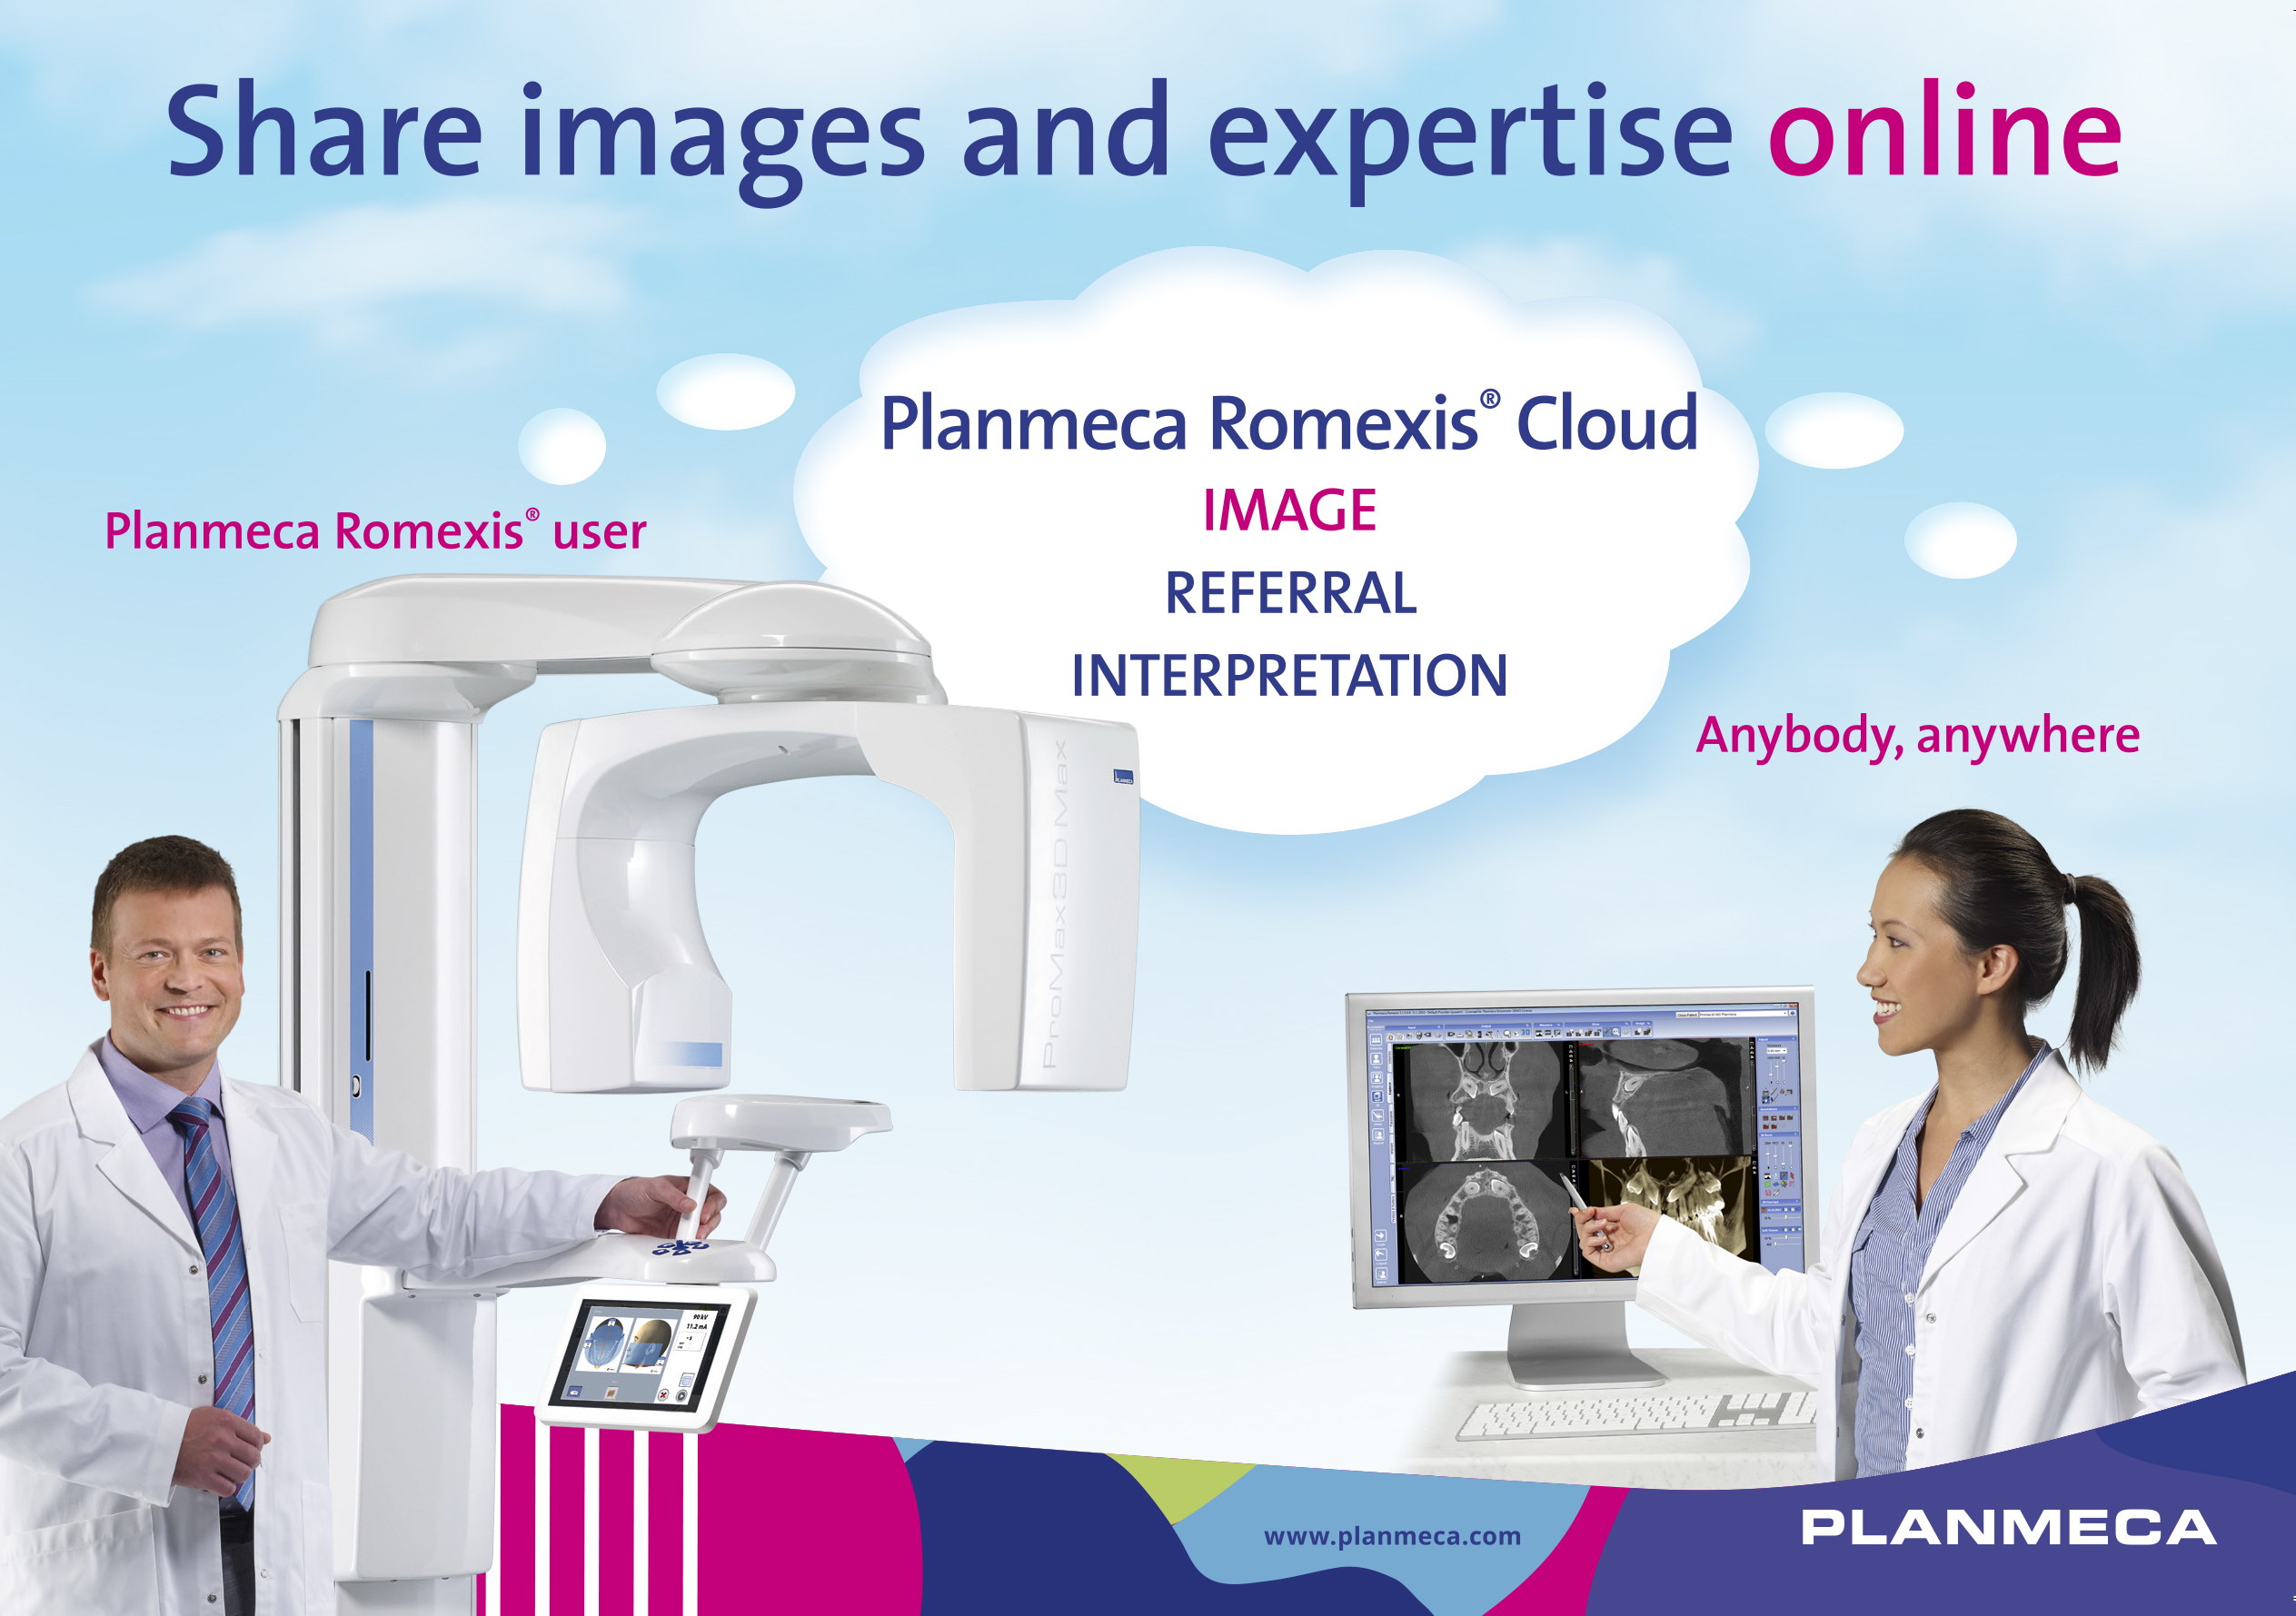 Il nuovo servizio Planmeca Romexis Cloud consente un trasferimento agevole delle immagini, da professionista a professionista